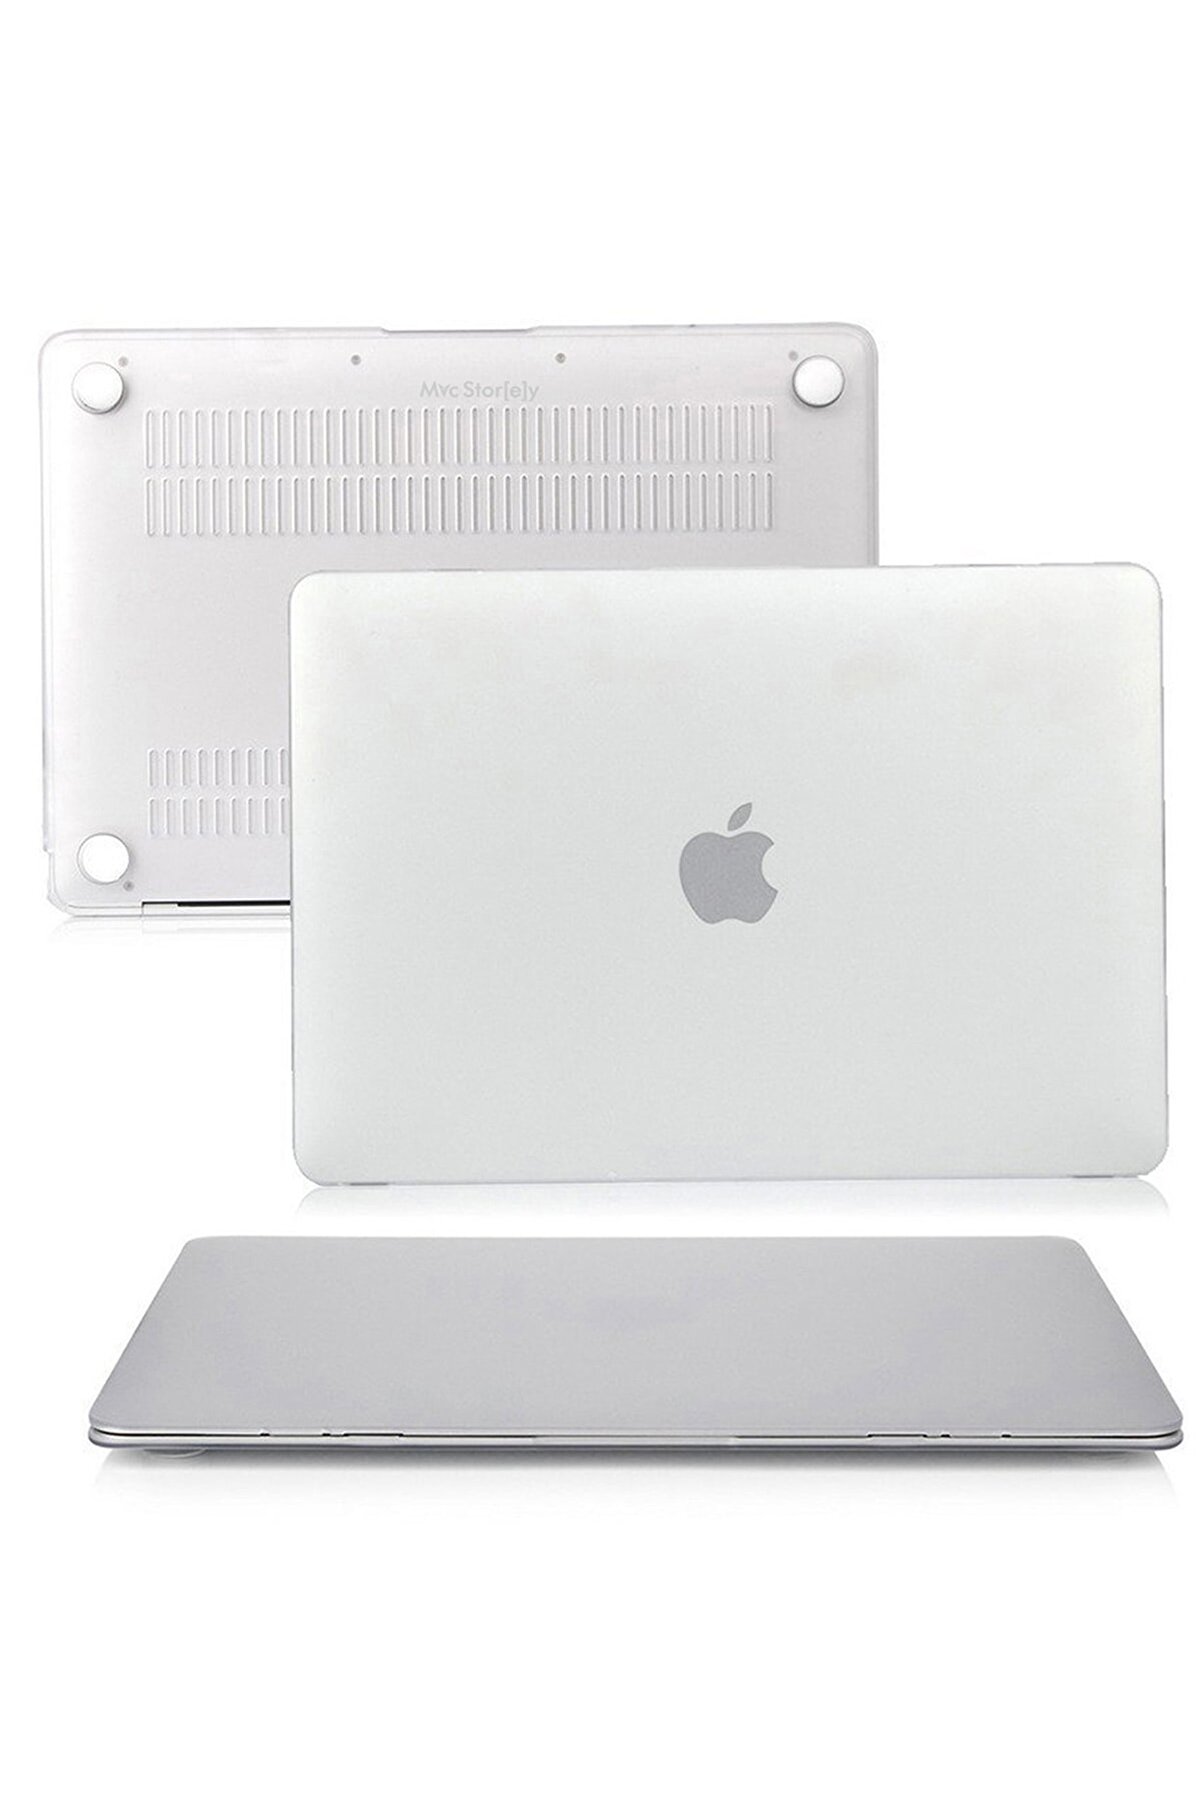 Mcstorey MacBook Pro Kılıf HardCase Touch Bar A1706 A1708 A1989 A2159 A2251 A2289 A2338 ile Uyumlu Kılıf